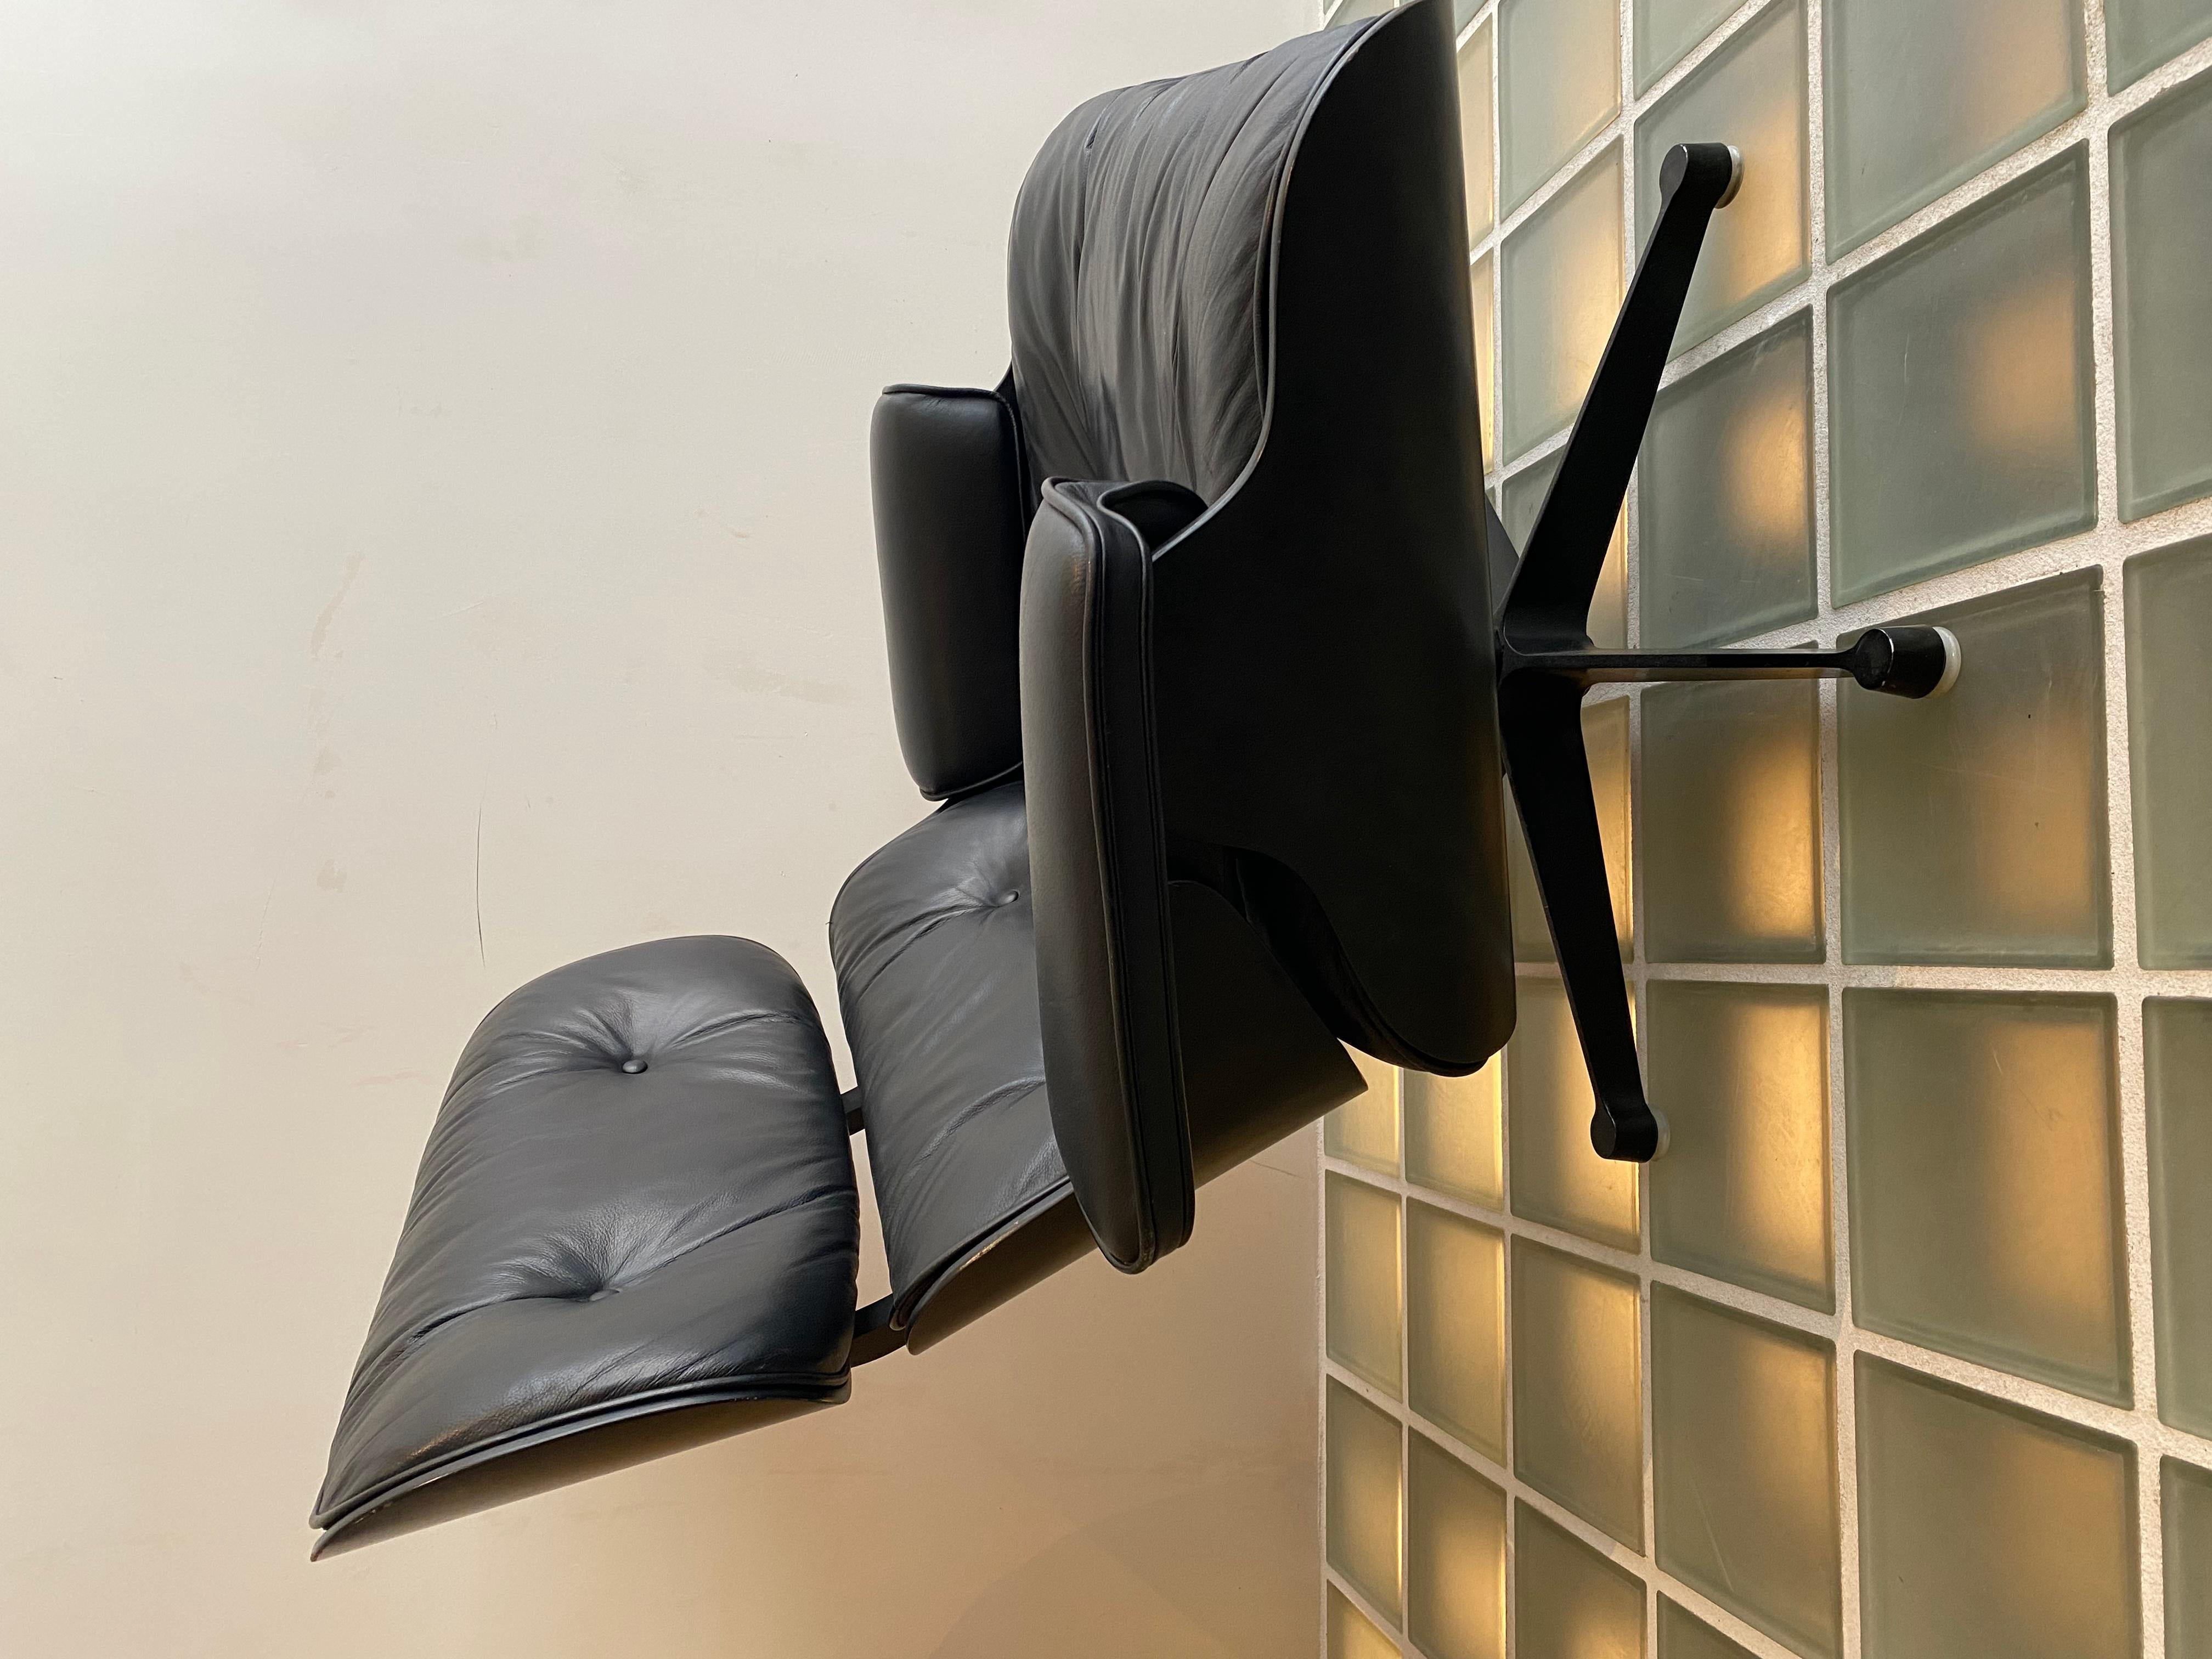 Tumbona.
Charles and Ray Eames, 1956 para Herman Miller.

La silla está compuesta por tres carcasas curvadas de madera contrachapada recubiertas de chapa: el reposacabezas, el respaldo y el asiento.

Las carcasas y los cojines de los asientos